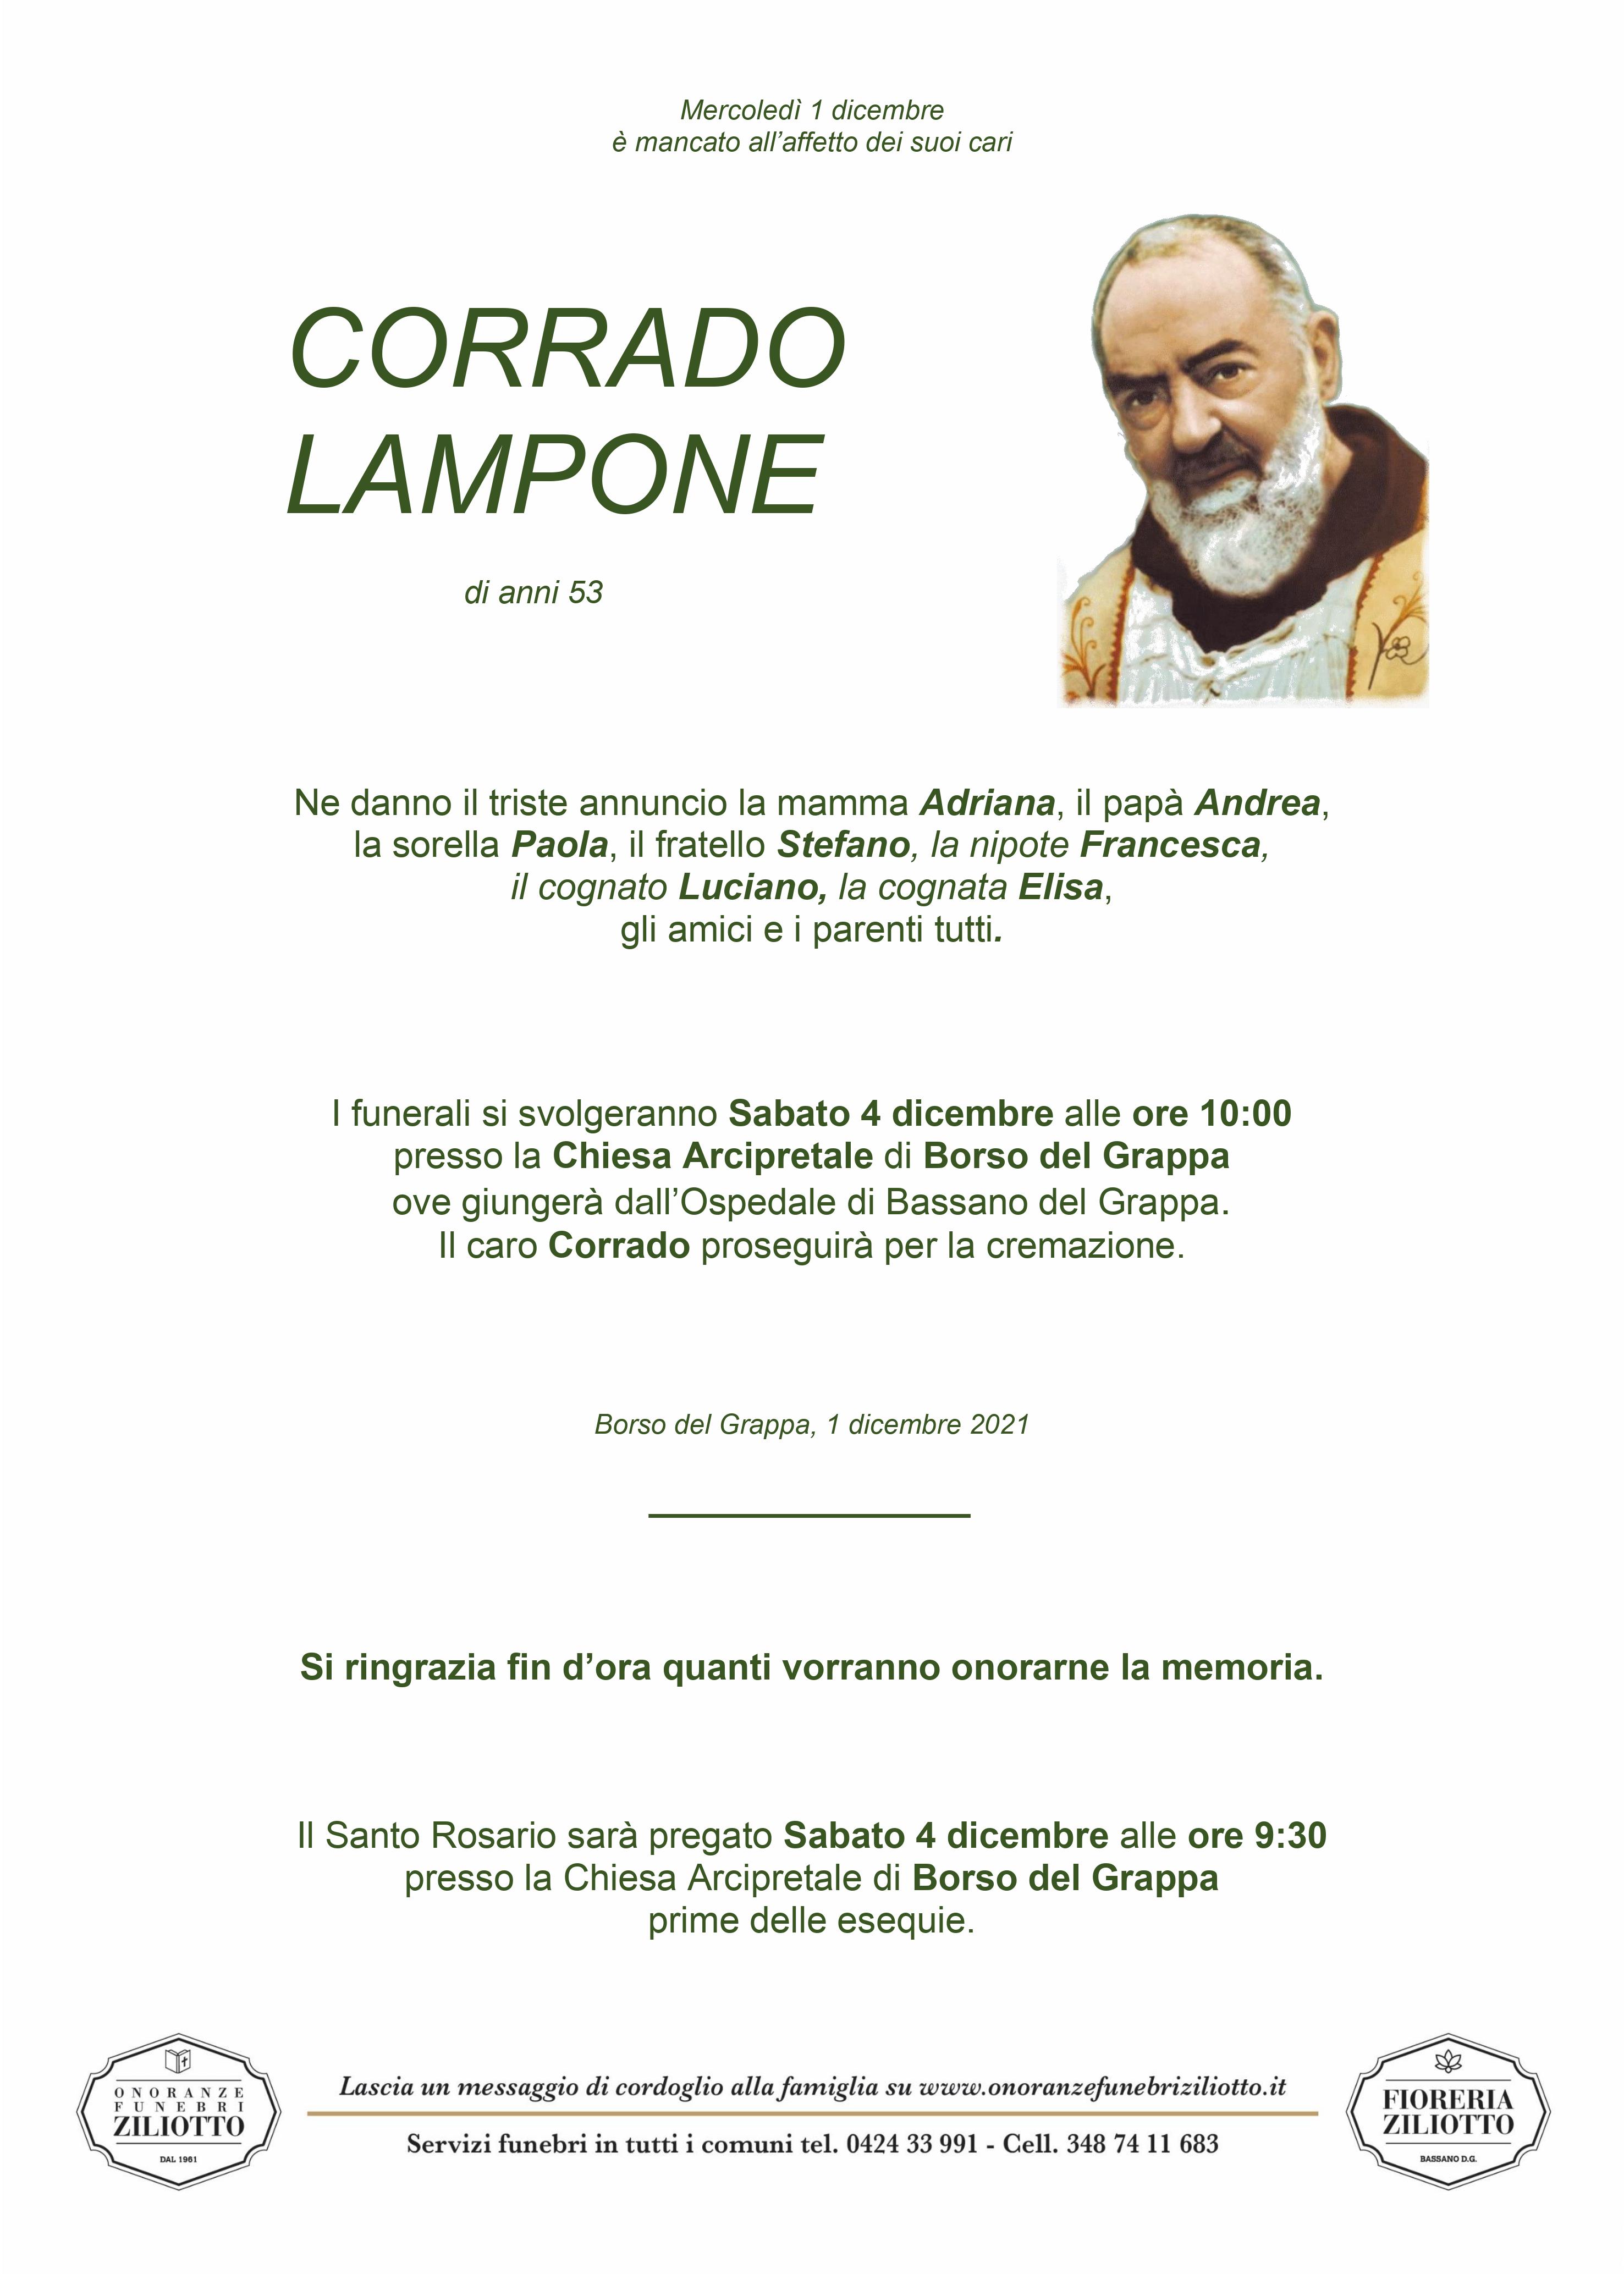 Corrado Lampone - 53 anni - Borso del Grappa